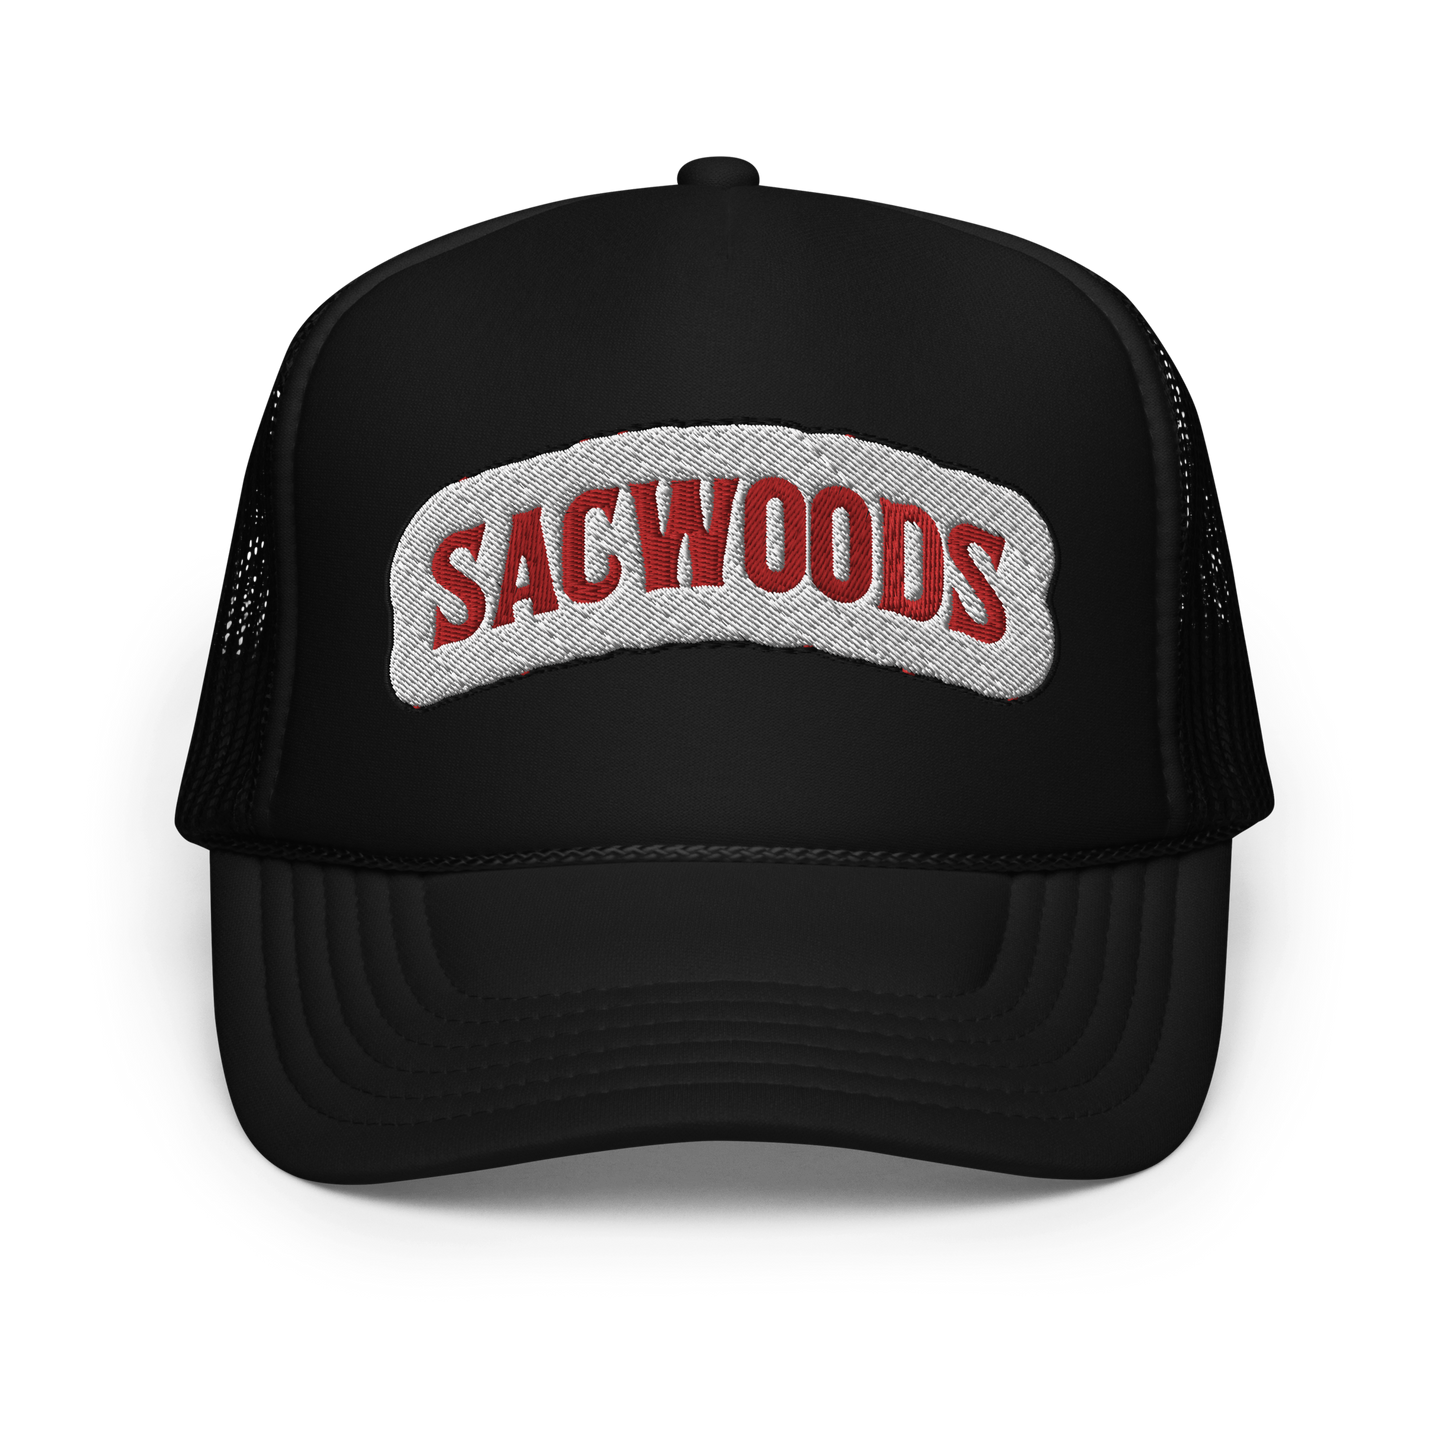 ATZ "Sacwoods" Foam trucker hat